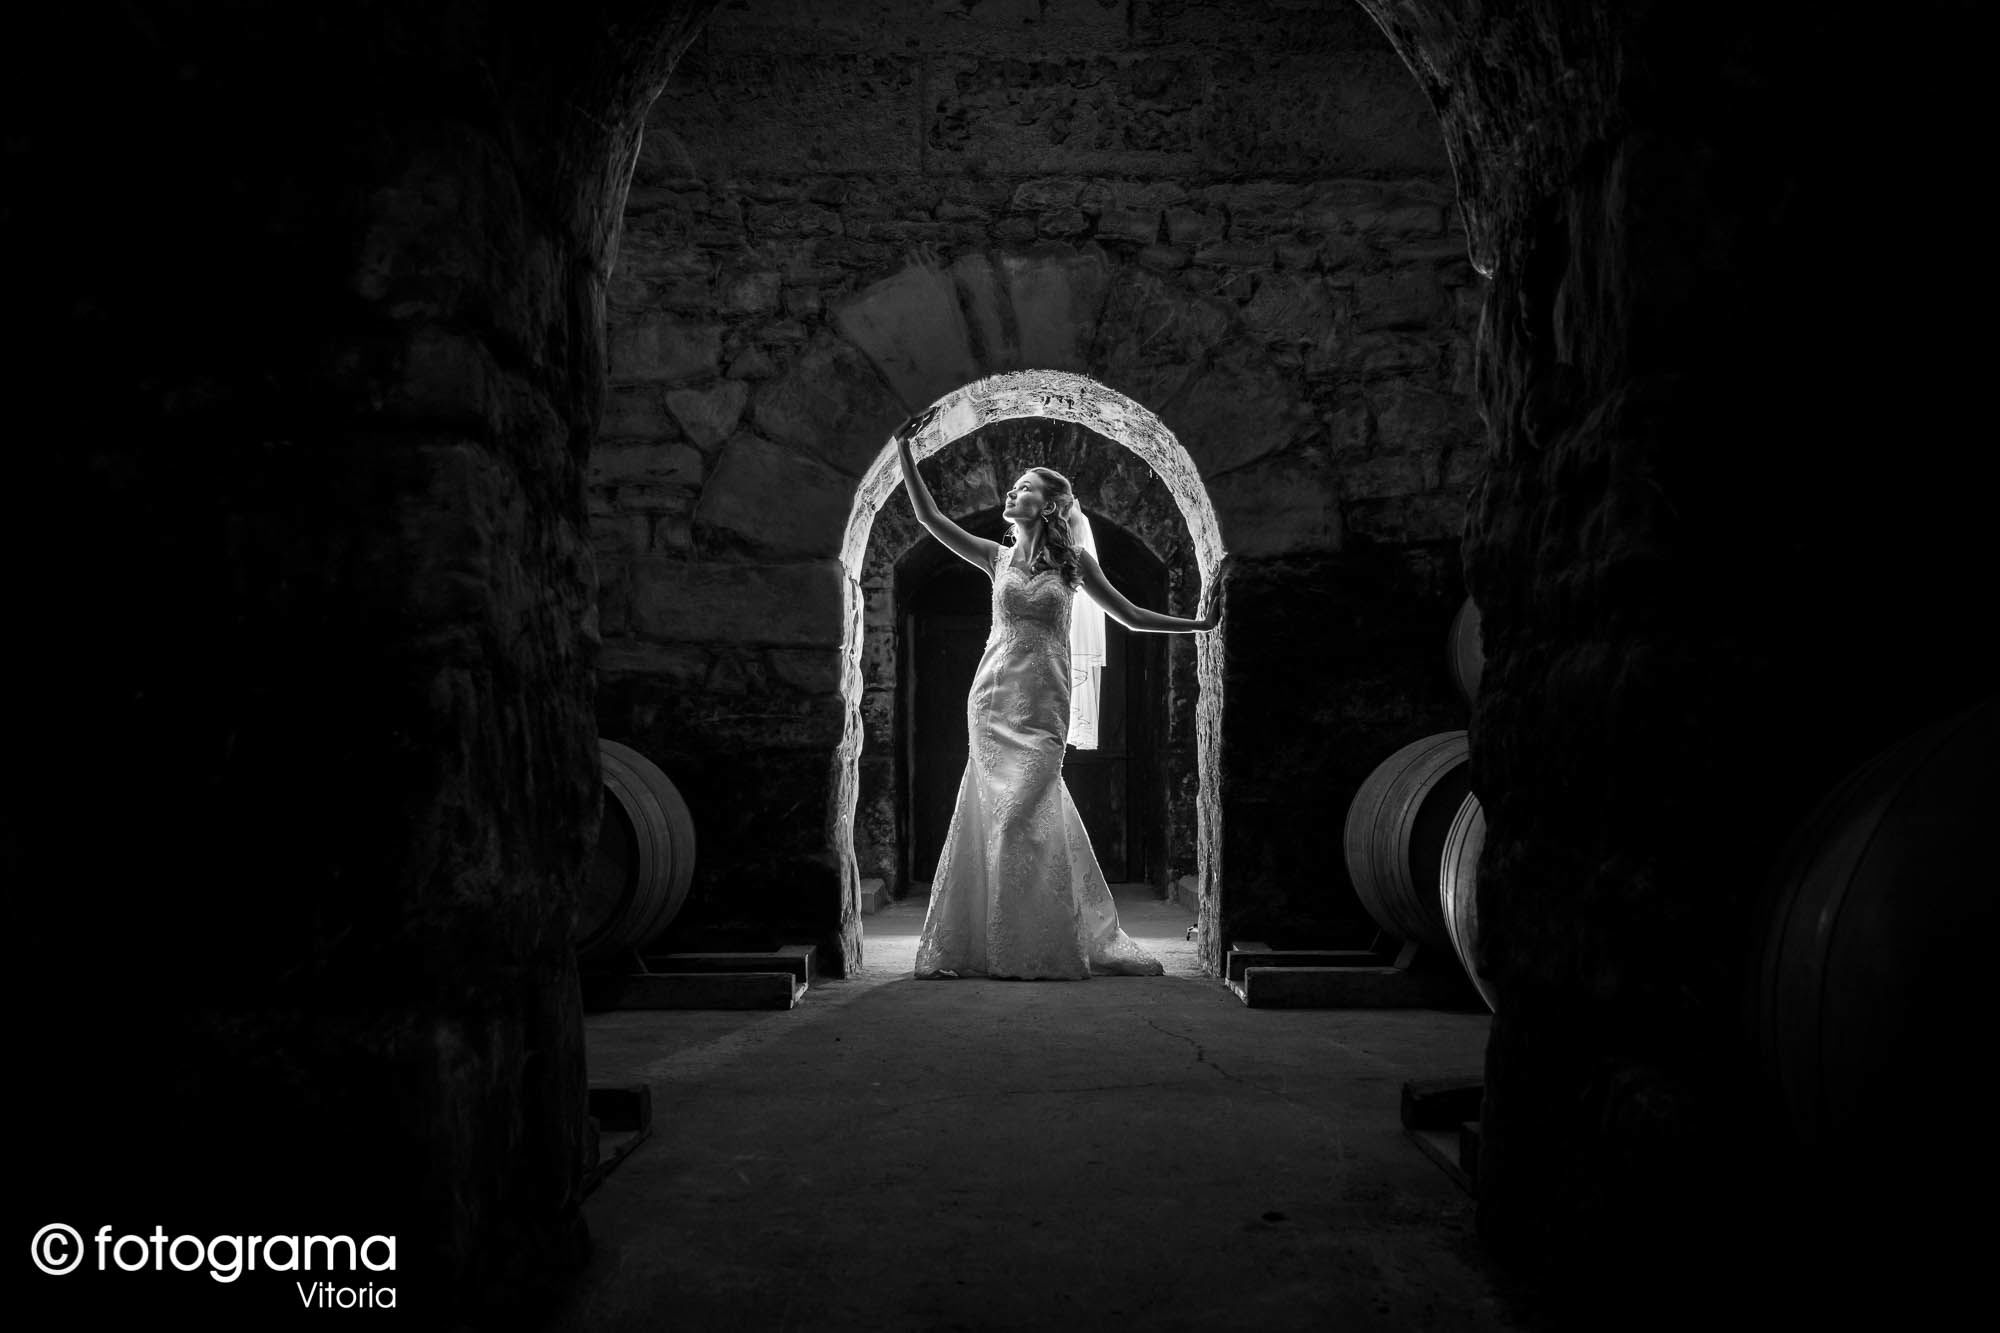 Fotograma Vitoria - 002-foto-de-boda-en-blanco-y-negro-de-novia-posando-iluminada-en-las-bodegas-del-hotel-marques-de-riscal-en-elciego-fotogramavitoria-fotografo.jpg